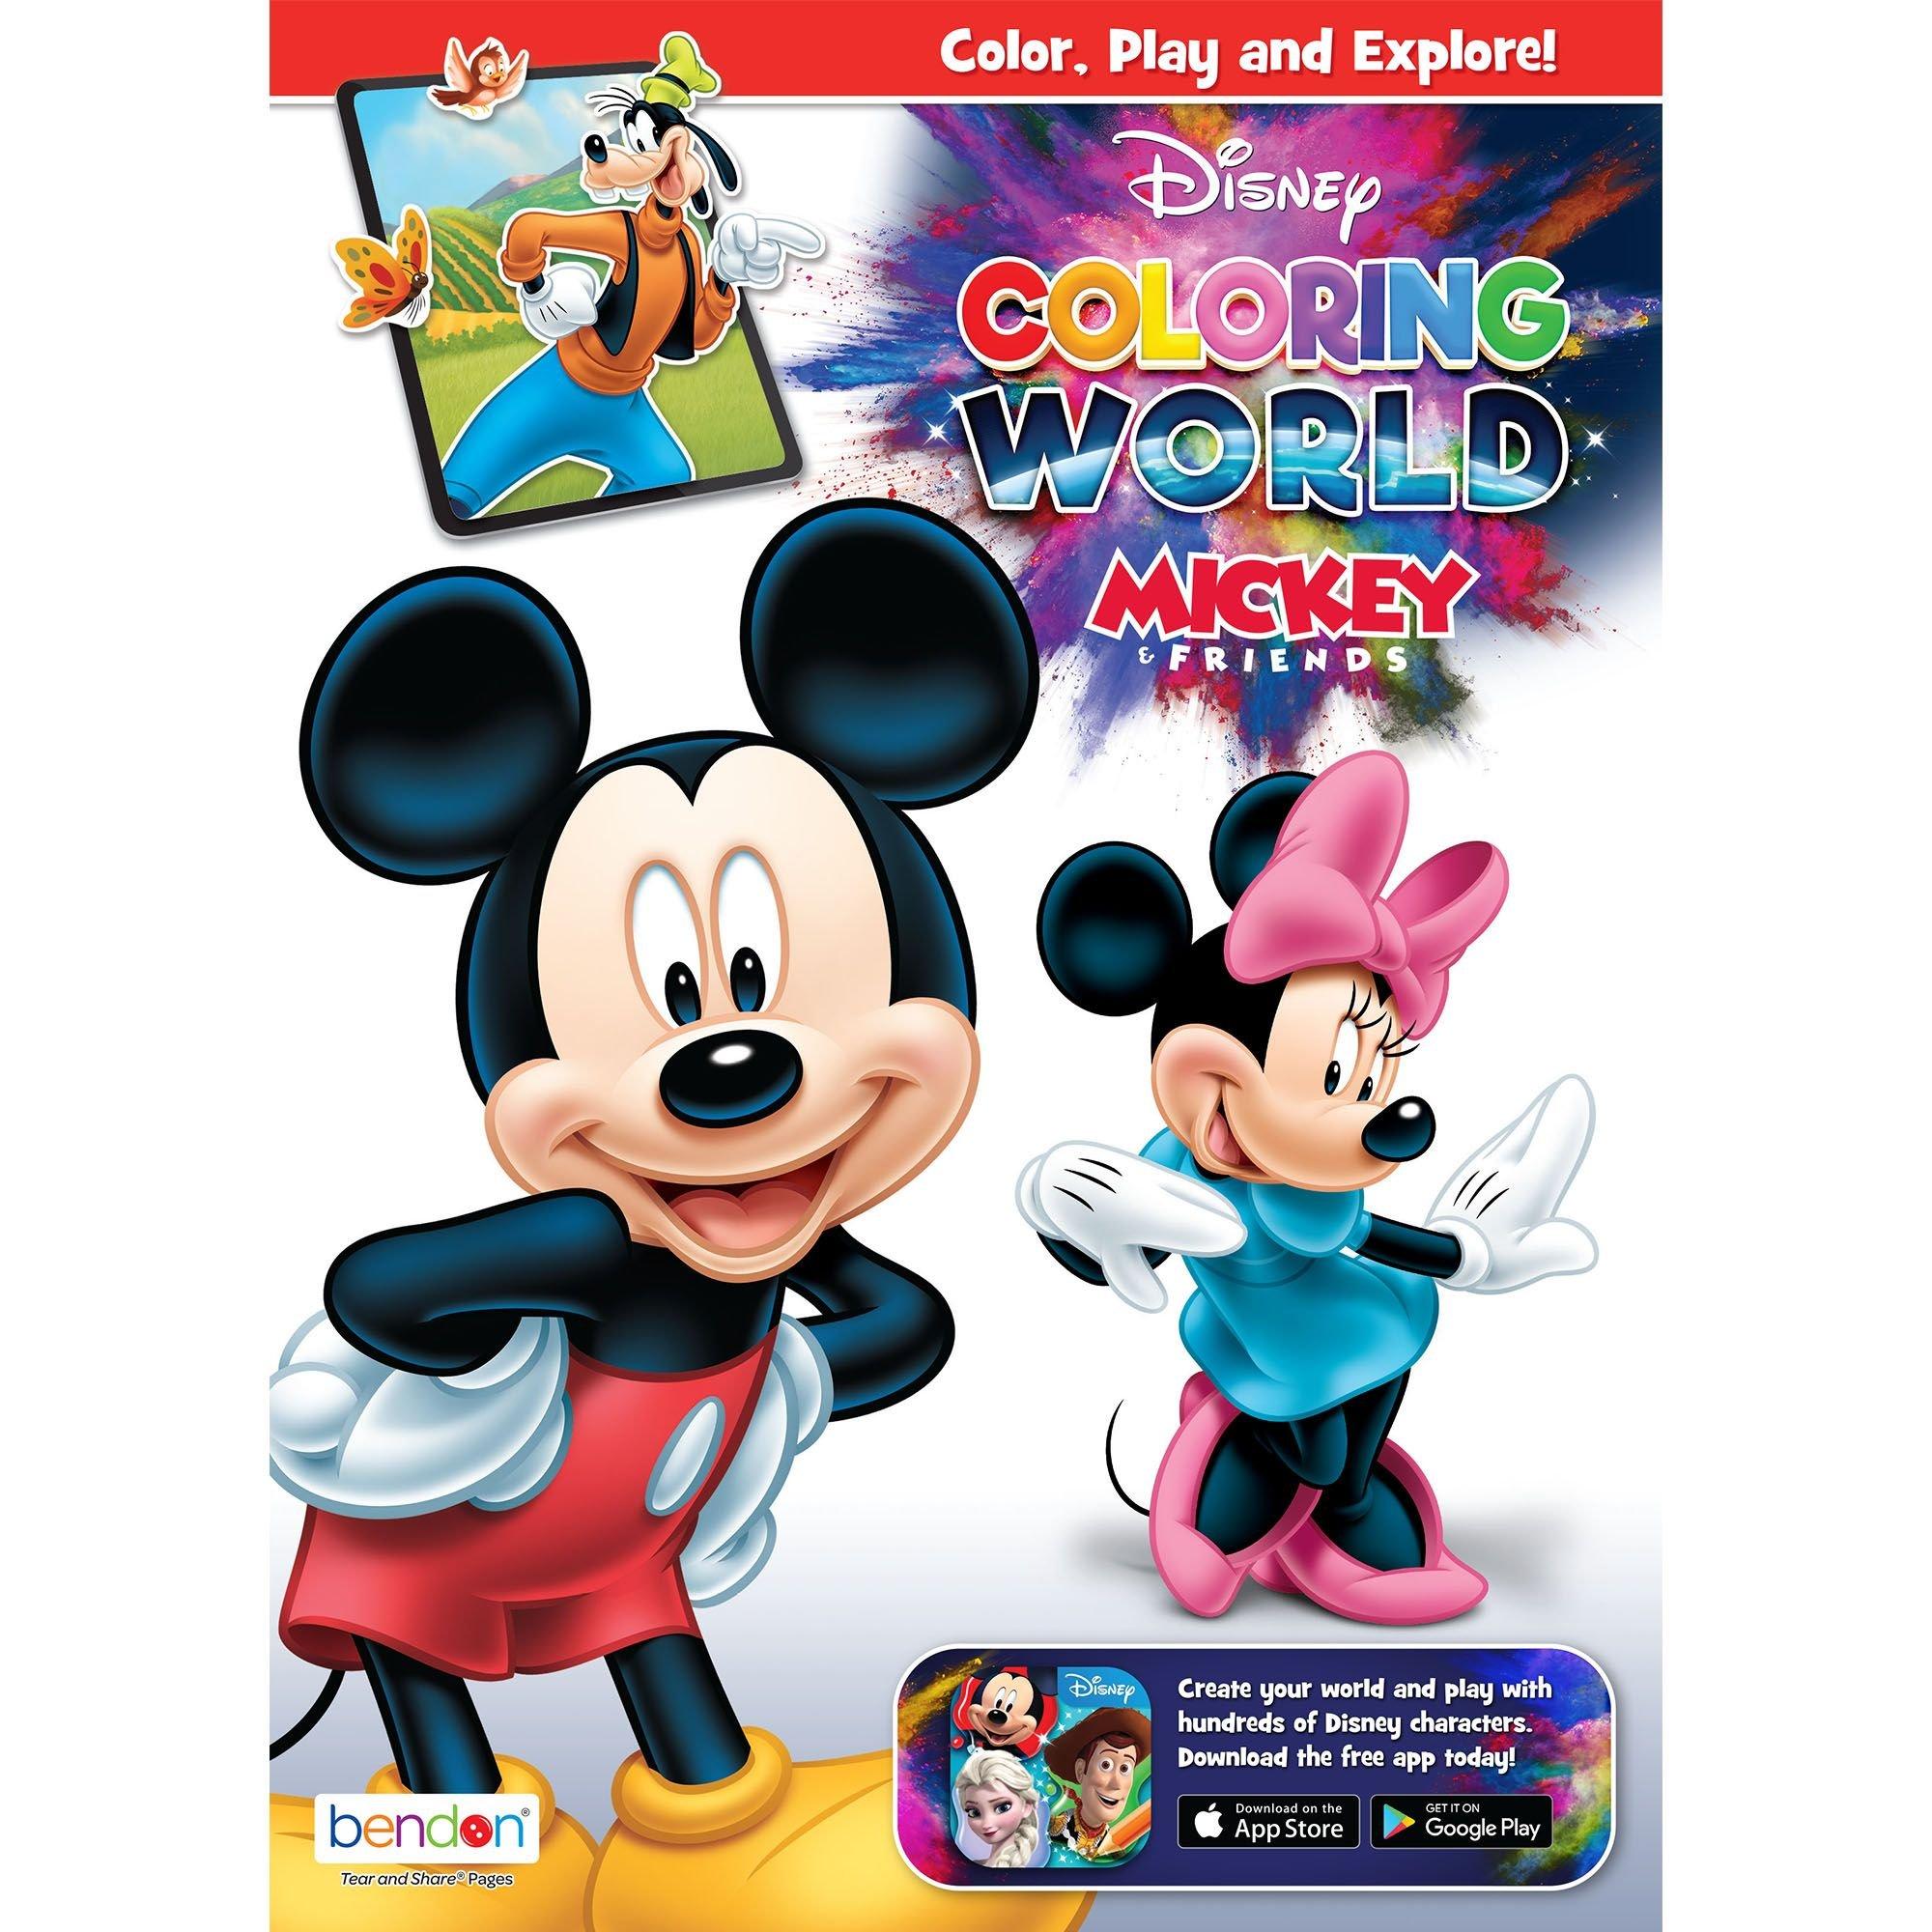 Mickey & Friends Disney Stickers